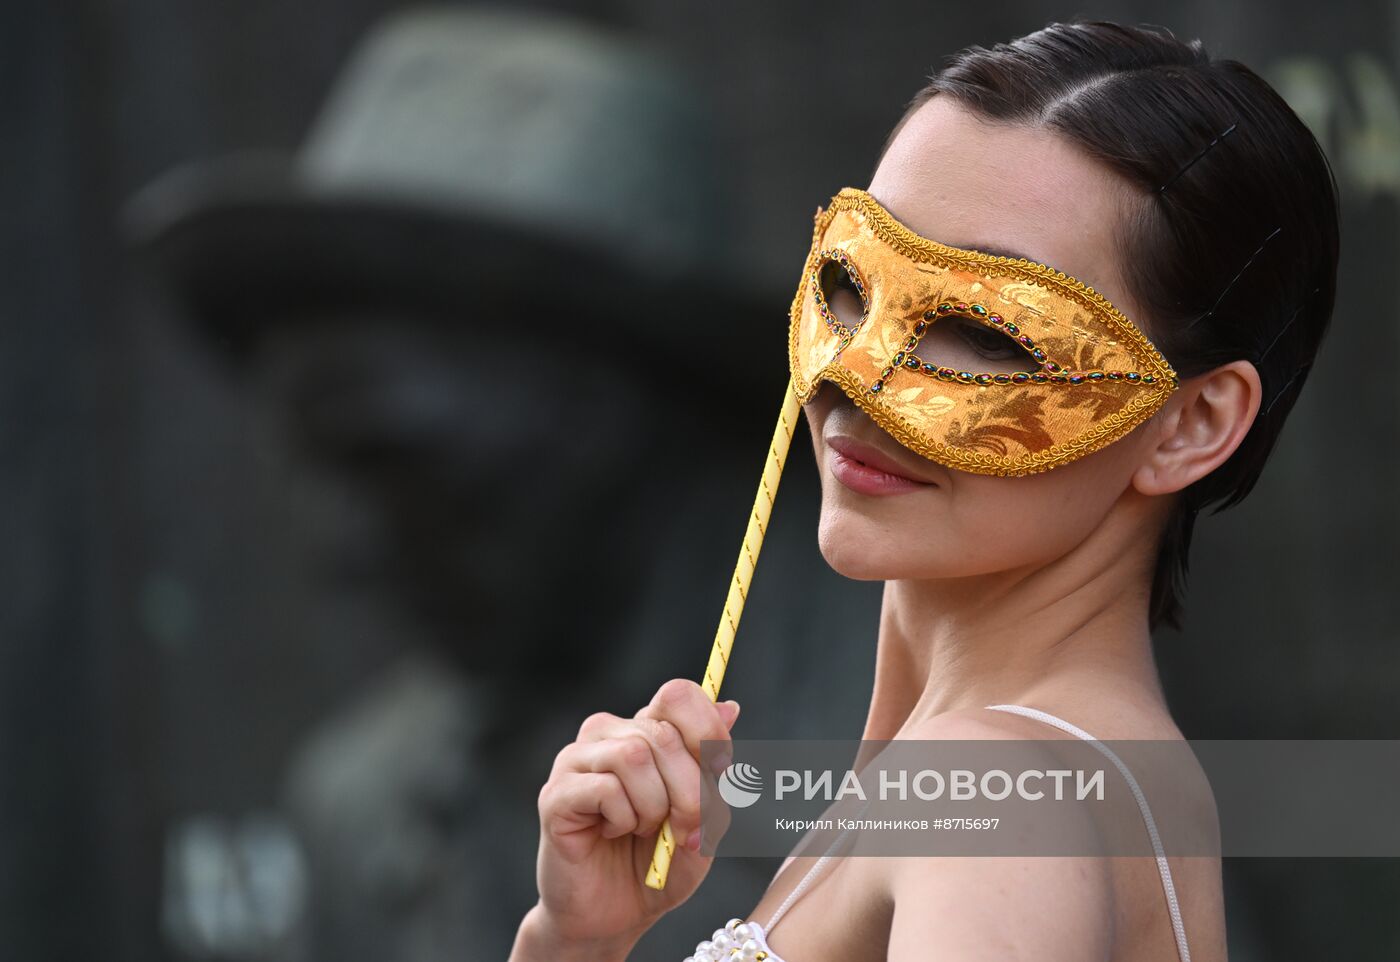 Вручение премии "Золотая маска"